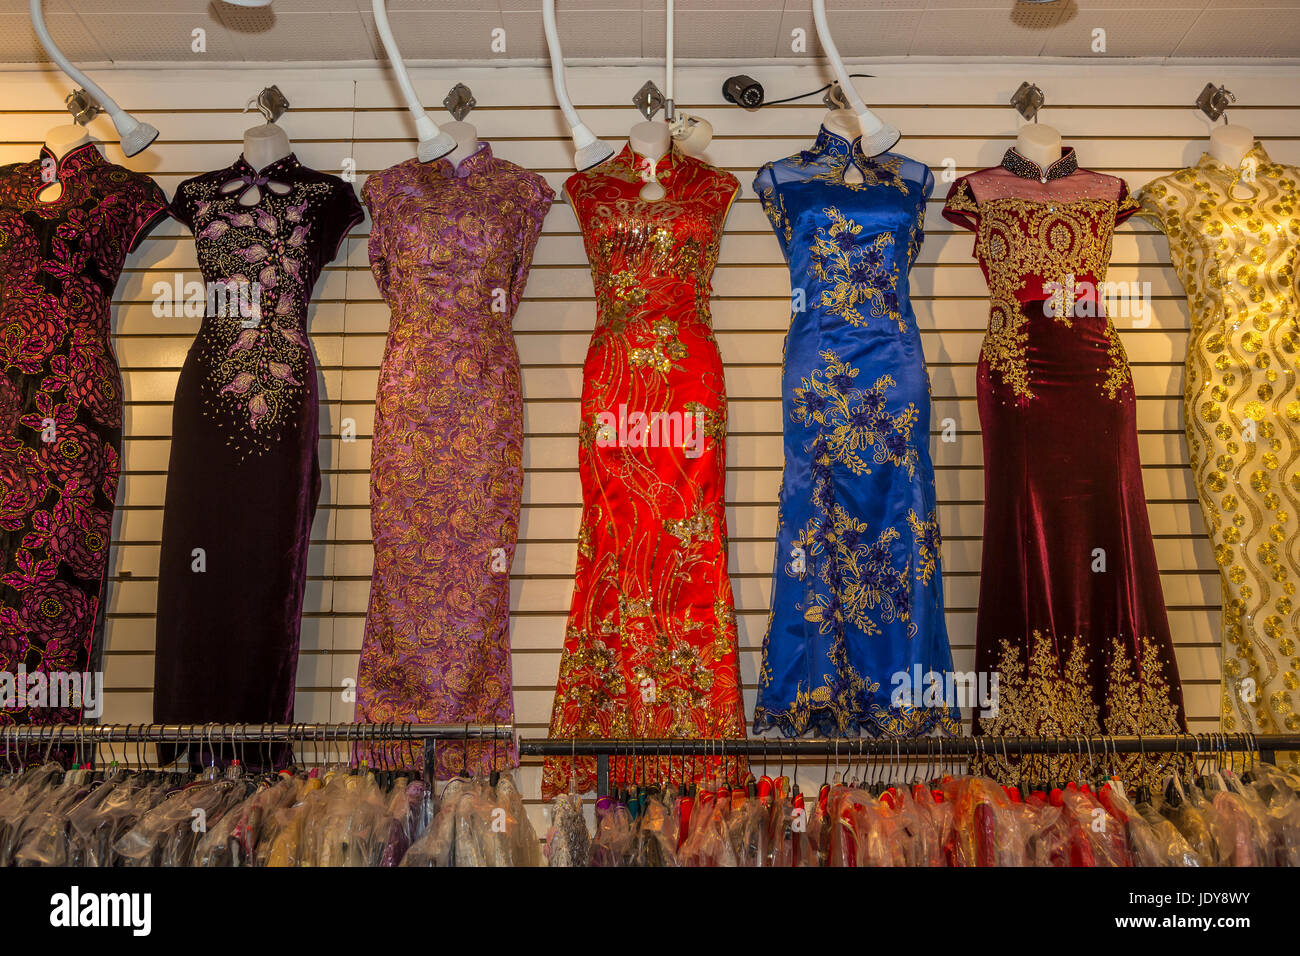 Kleider zu verkaufen, Anzeige, Kleidung zu speichern, Stockton Street, Chinatown, San Francisco, California, Vereinigte Staaten von Amerika Stockfoto